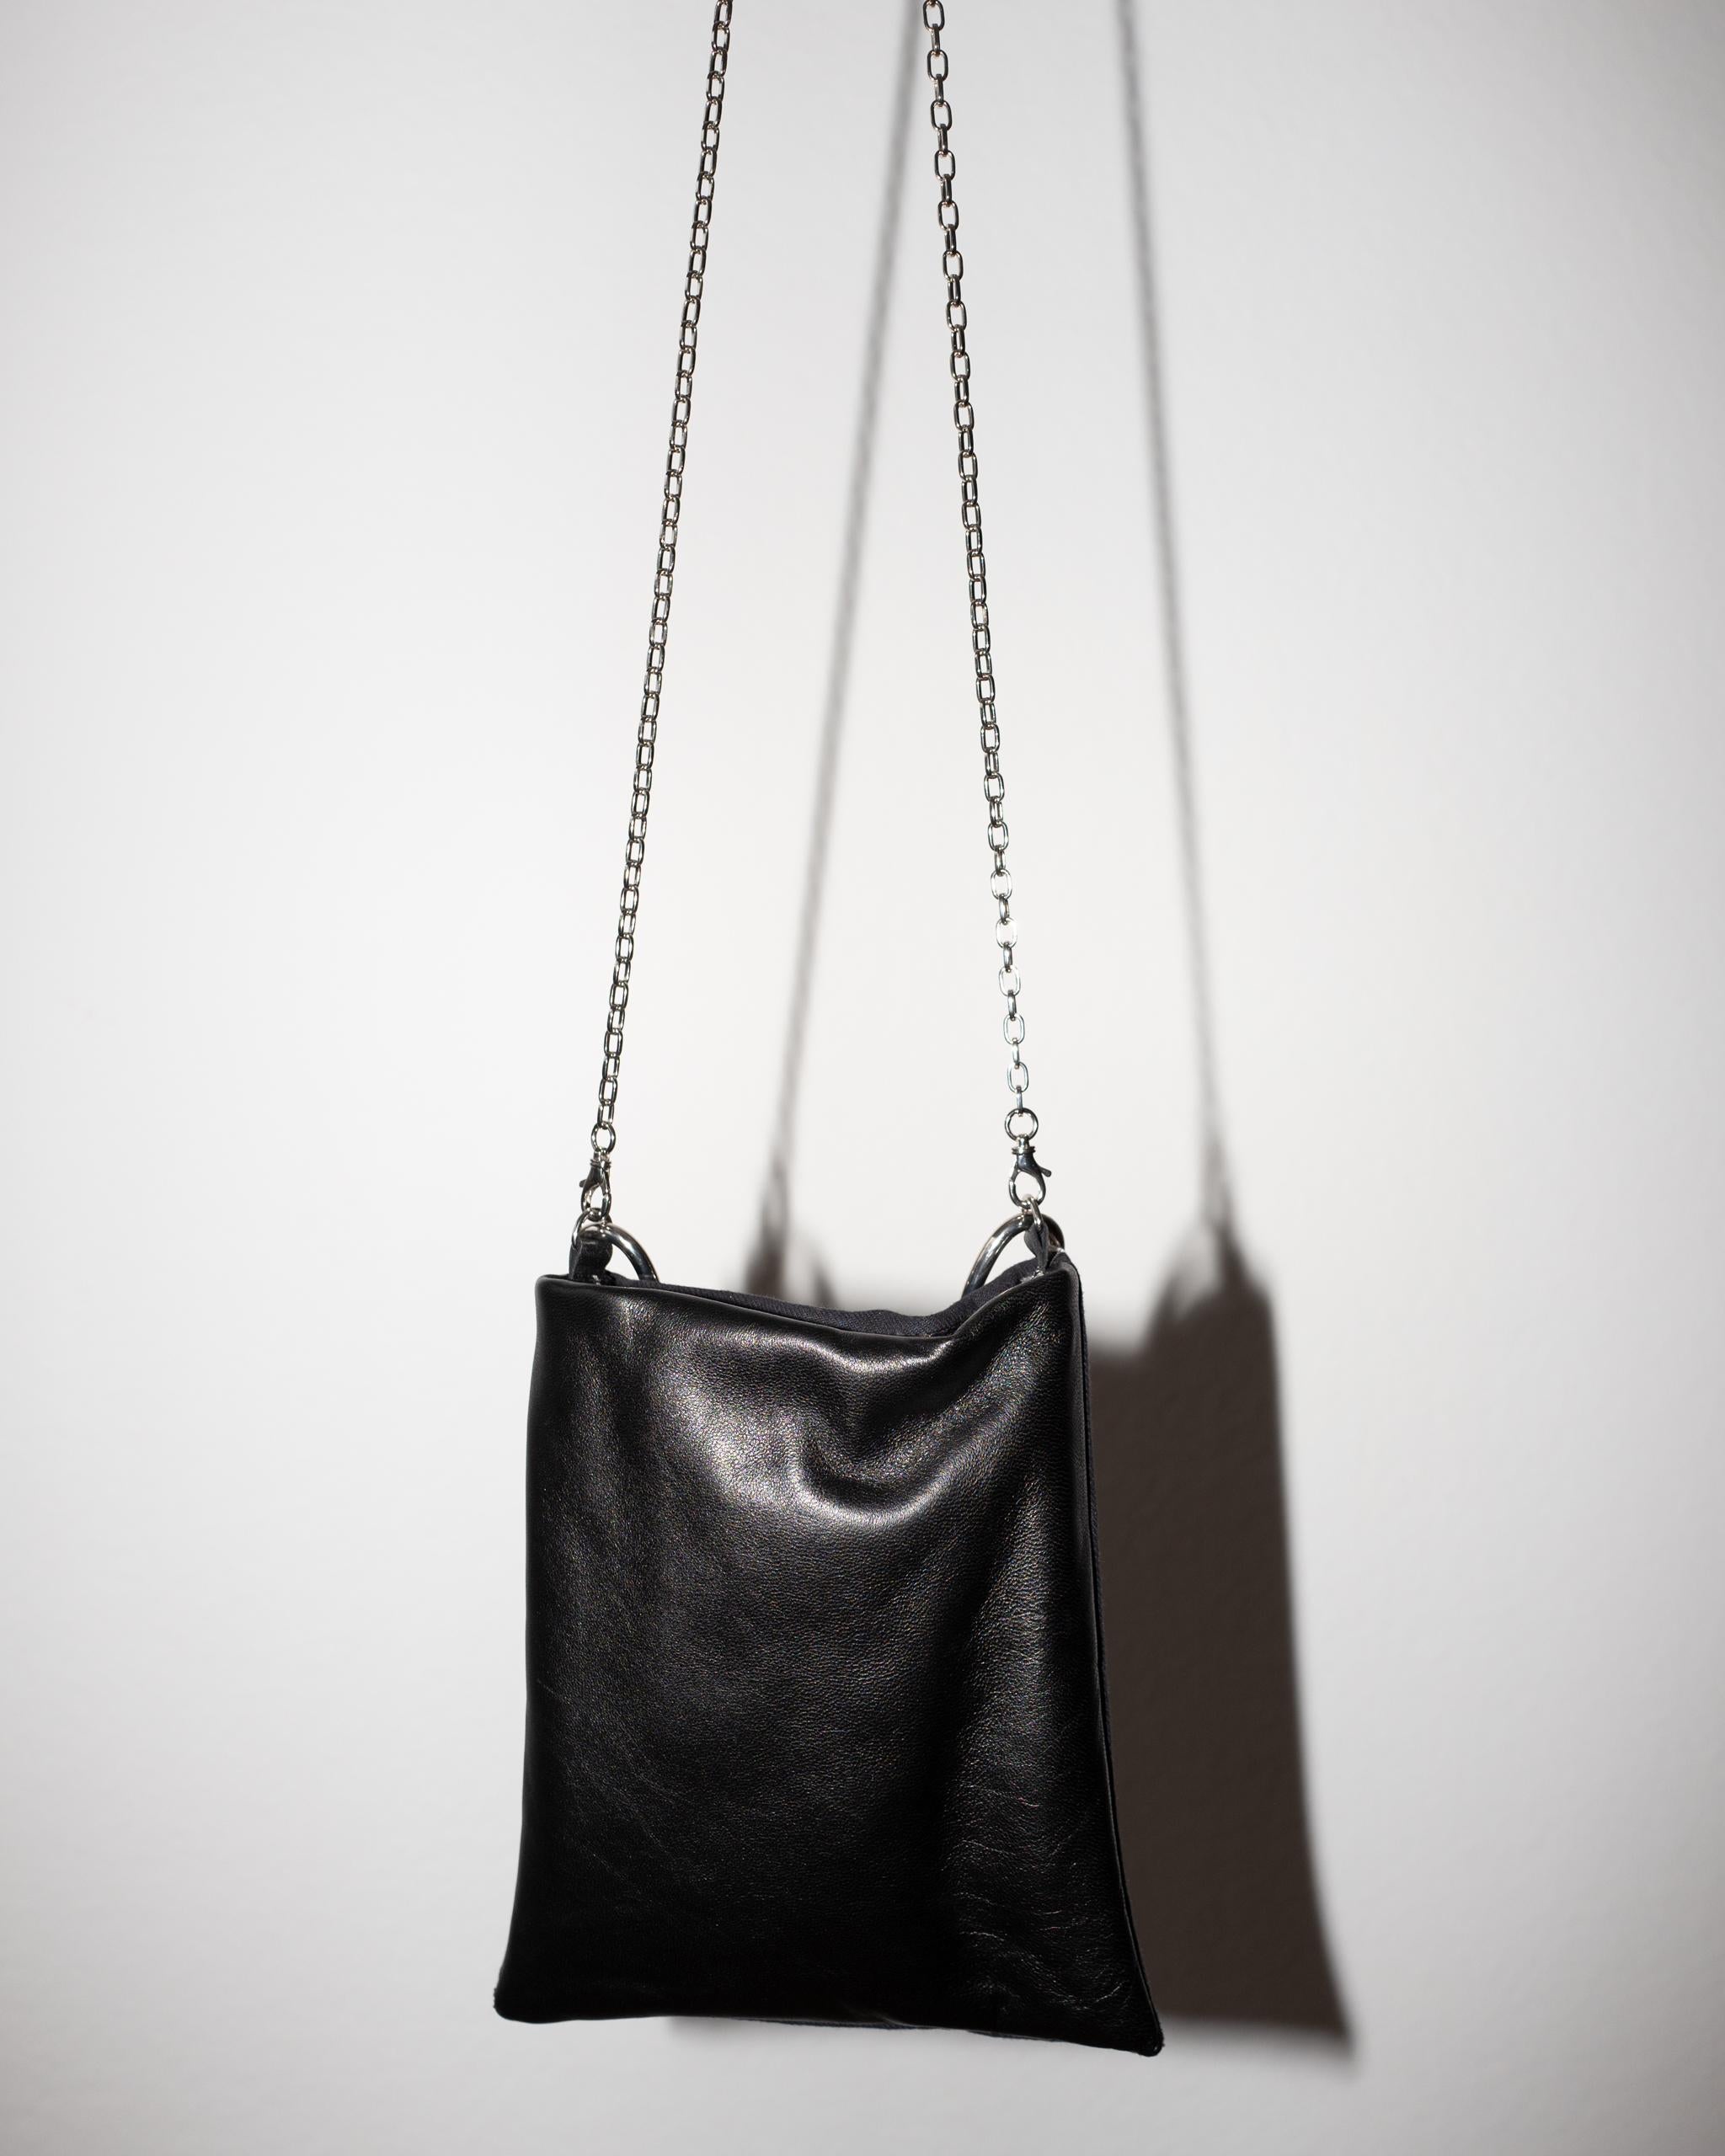 Crystal Star Embellished Black Evening Shoulder Bag Black Leather Chunky Chain For Sale 5